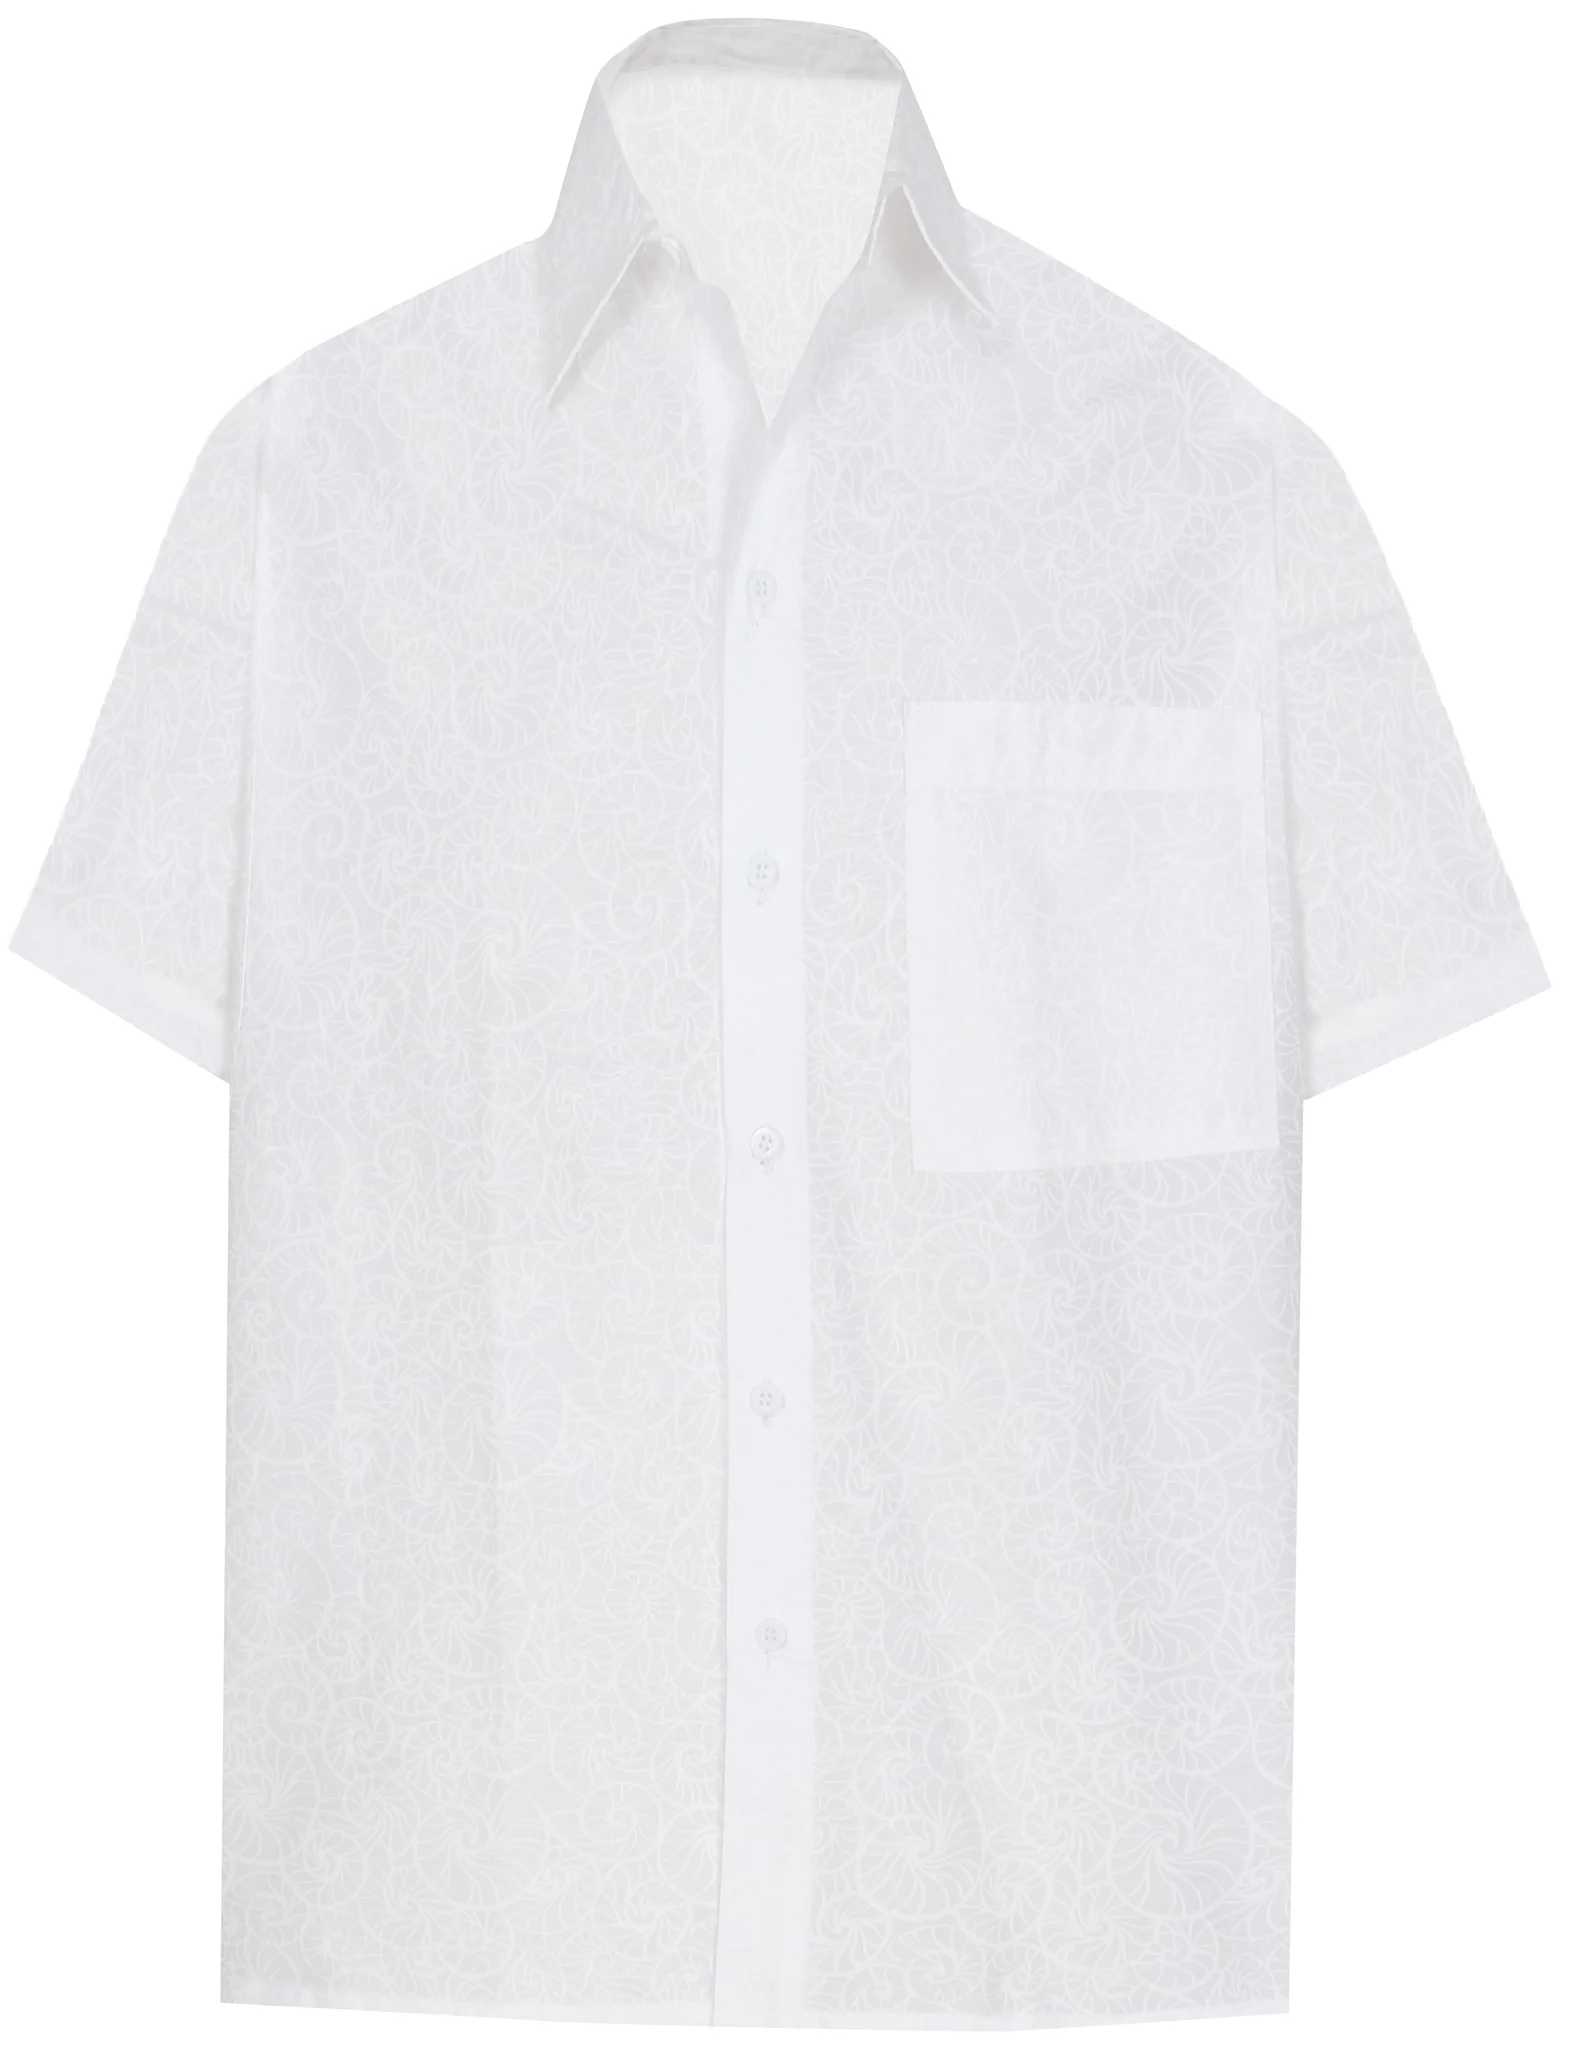 LA LEELA Men's Casual Hand-Print Cotton Casual Shirt